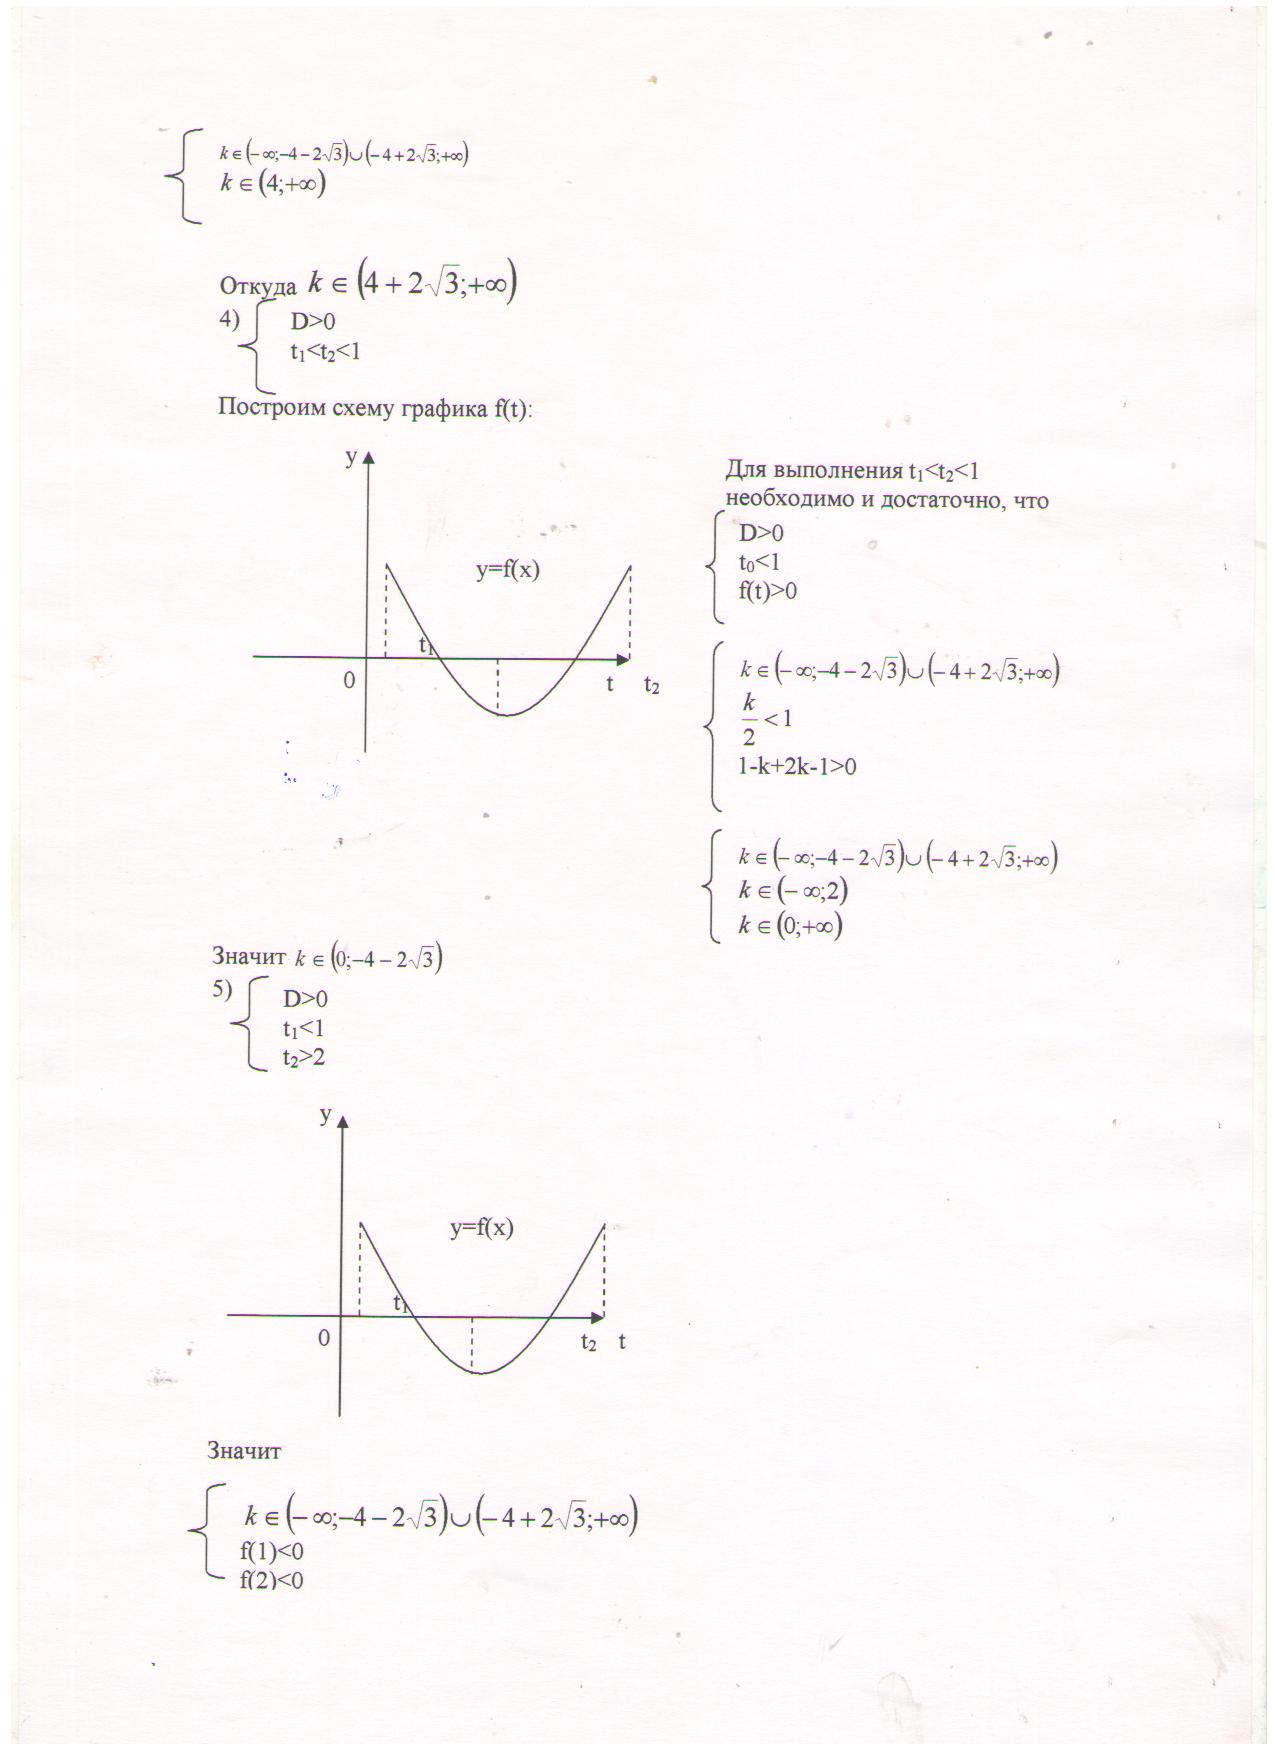 Применение свойств квадратичной функции при решении показательных, логарифмических и тригонометрических уравнений